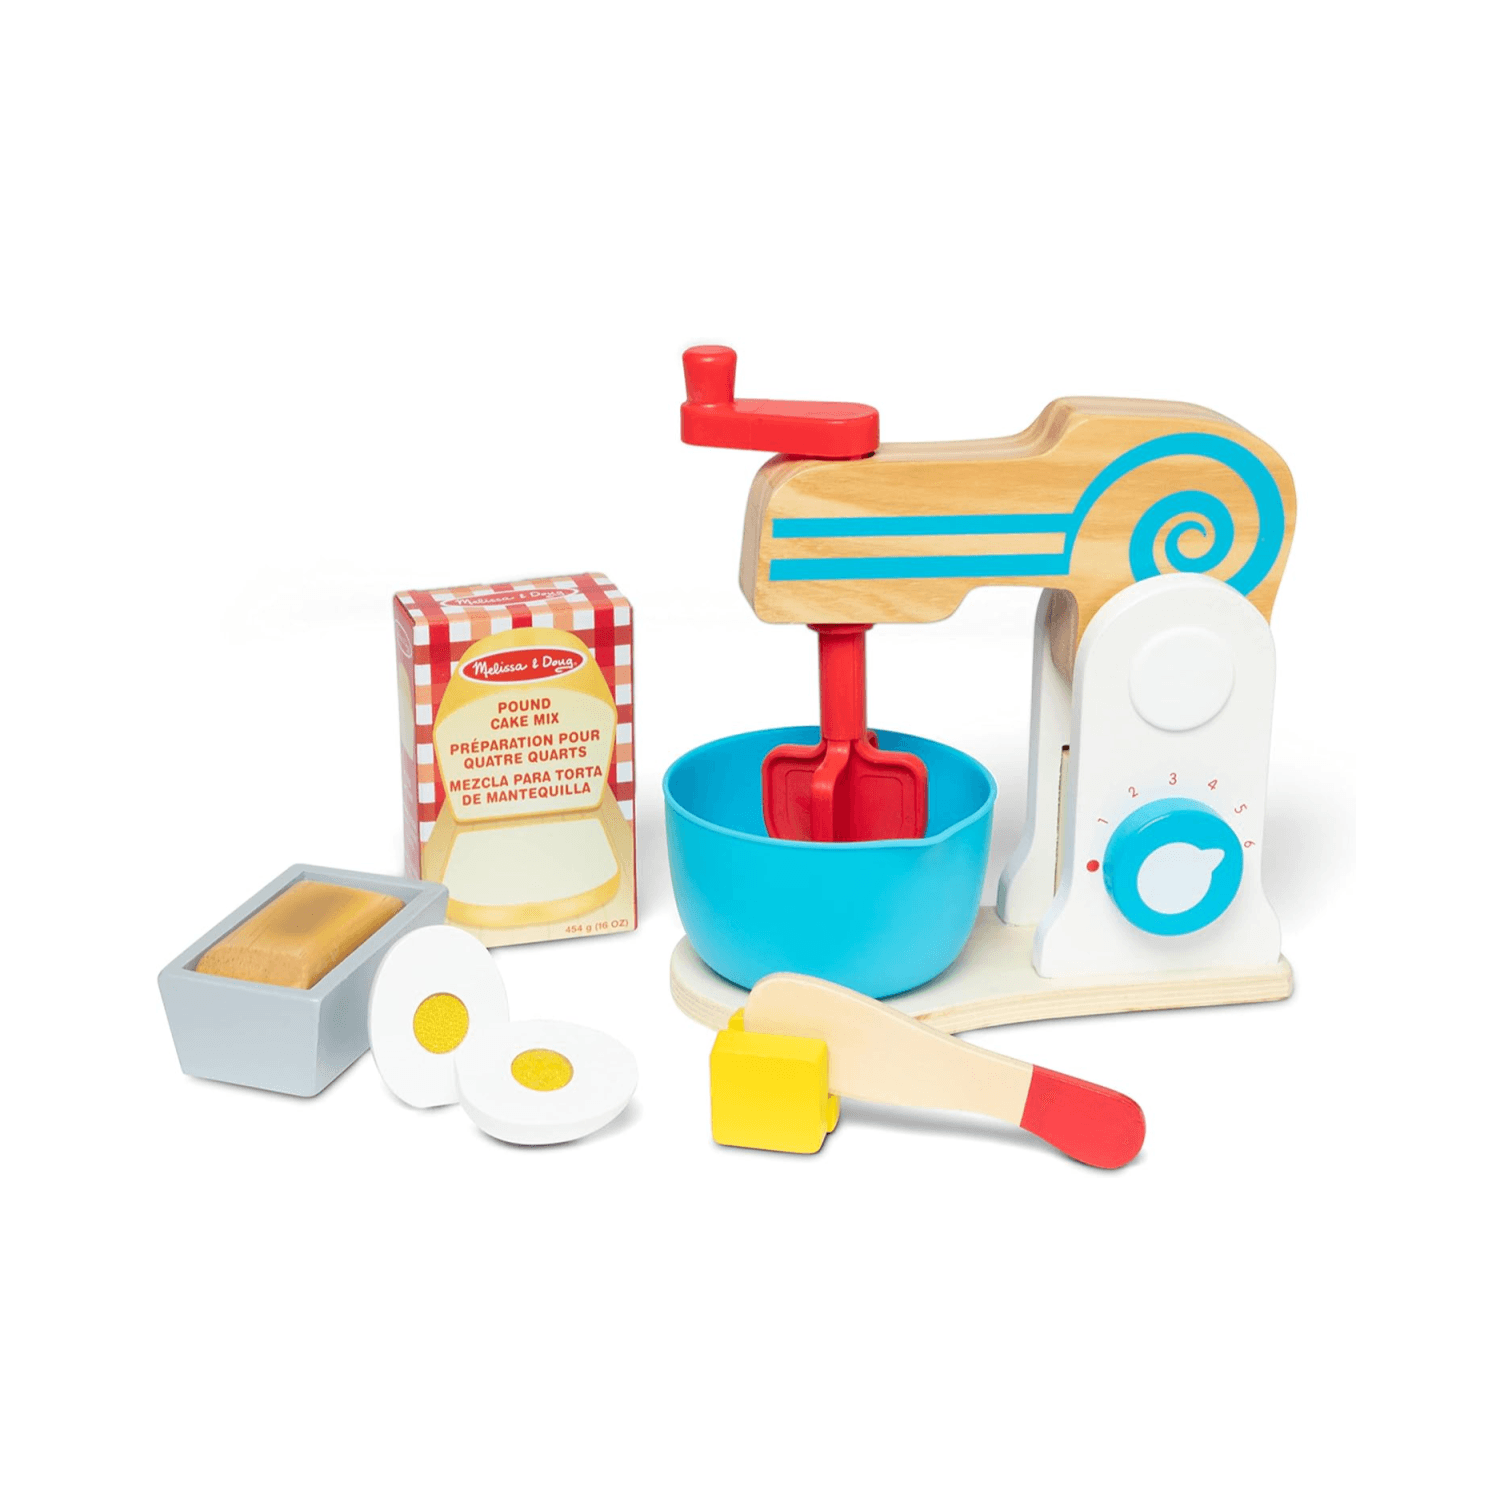 Montessori Melissa & Doug Baking Set Toys Make-a-Cake Mixer